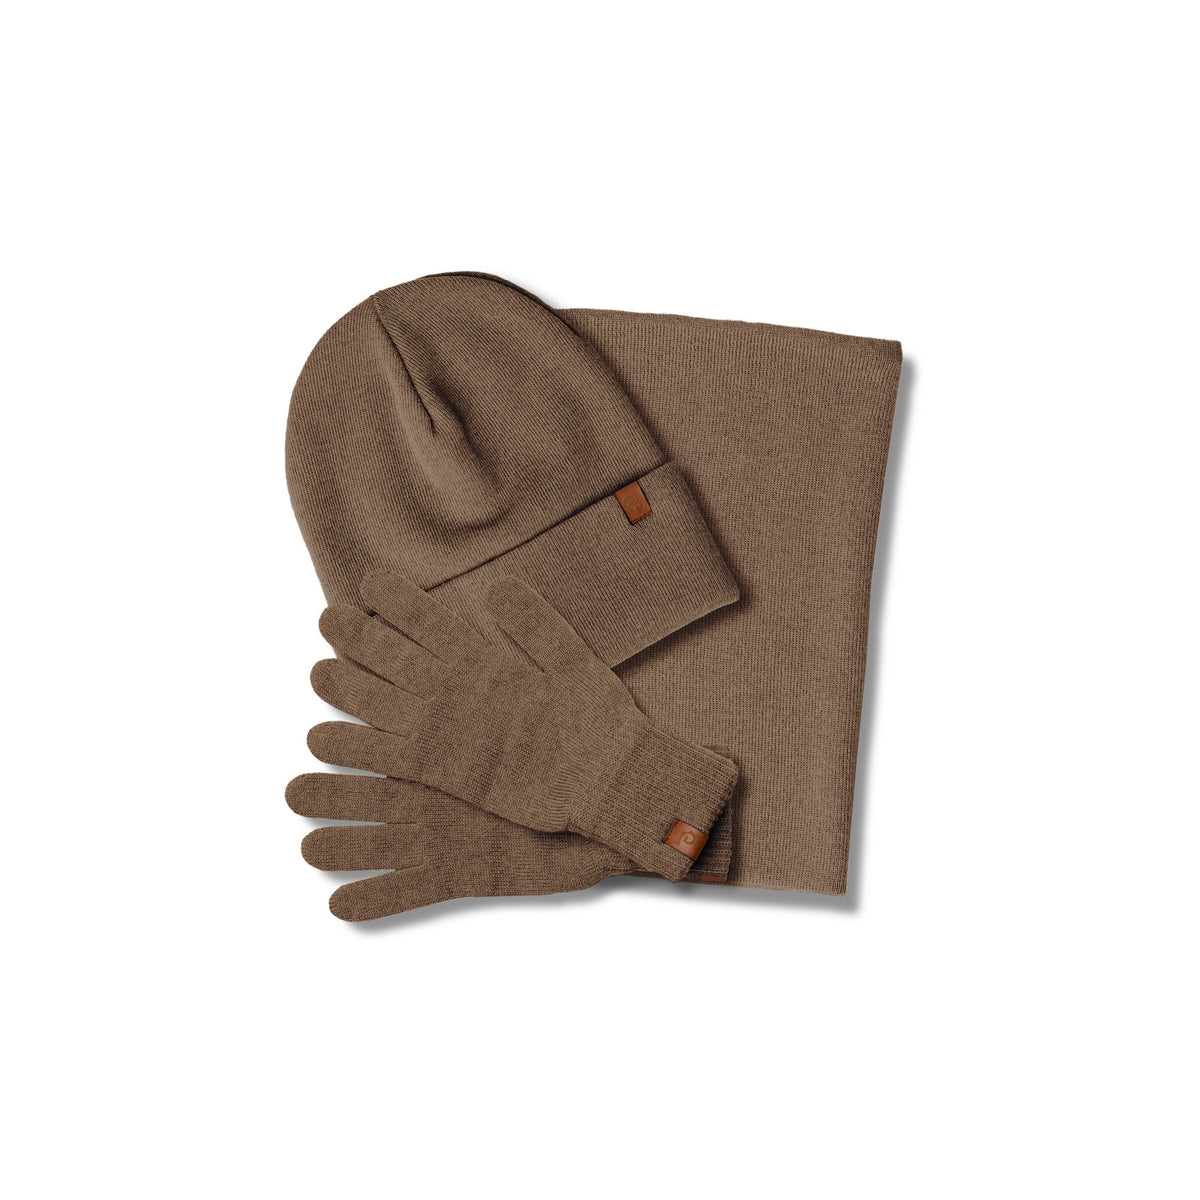 MENIQUE 100% Merino Wool Womens Knit Beanie, Gaiter & Gloves 3-Piece